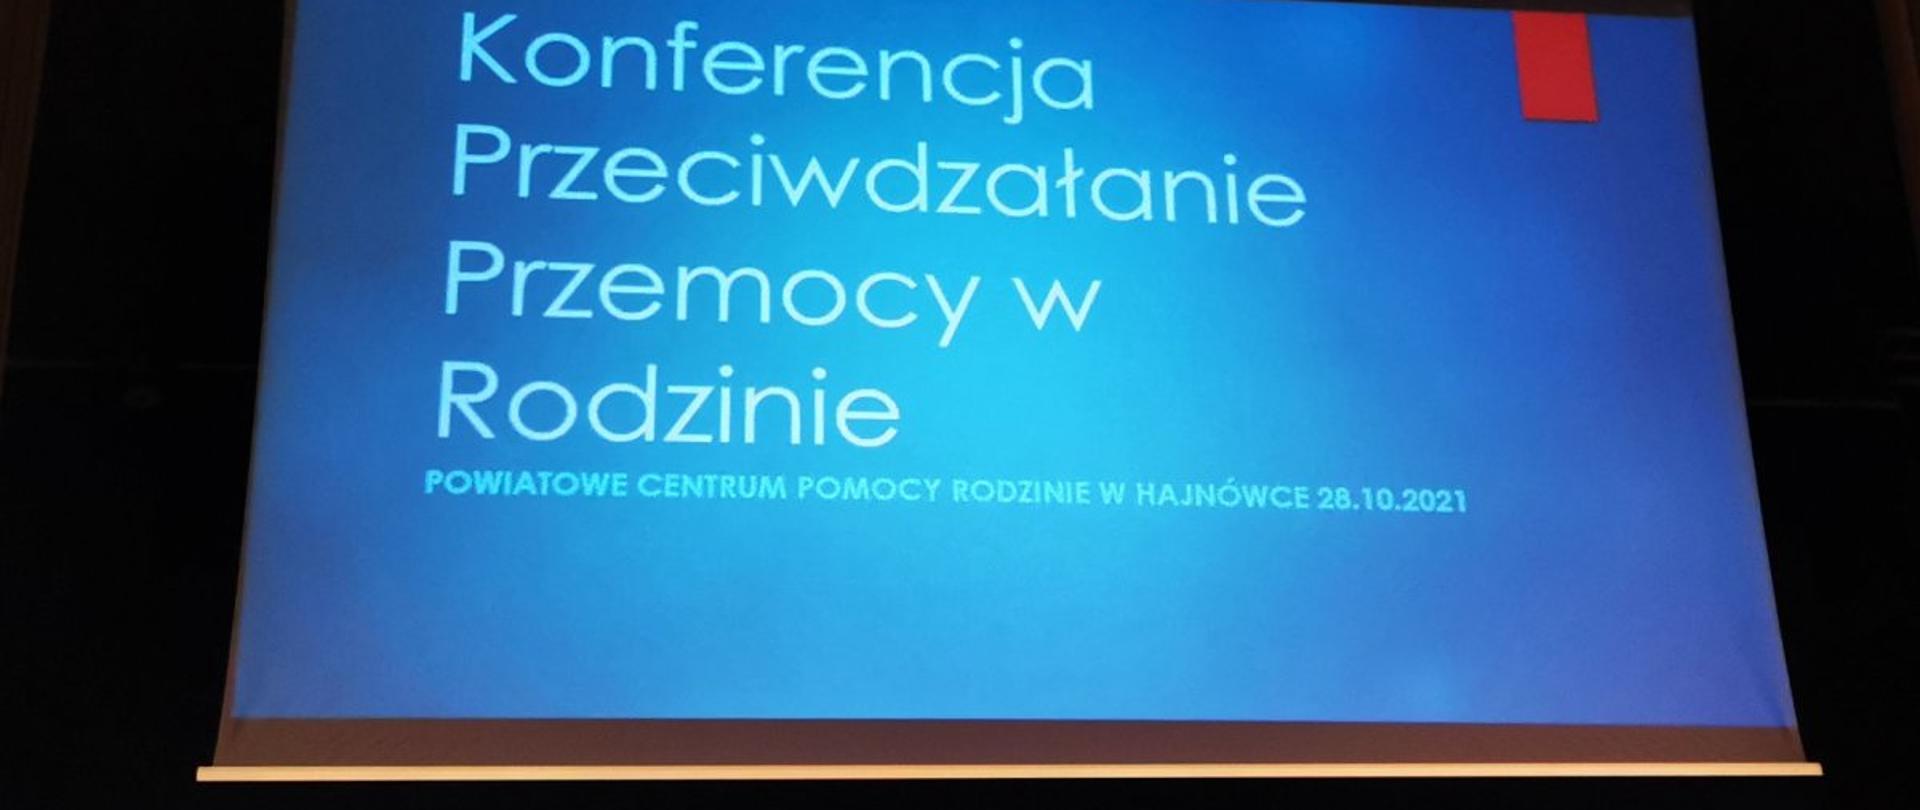 Widok z rzutnika ekranu: slajd wprowadzający do prezentacji. Na niebieskim tle napis "Konferencja przeciwdziałanie przemocy w rodzinie, Powiatowe Centrum Pomocy Rodzinie 28.10.2021"